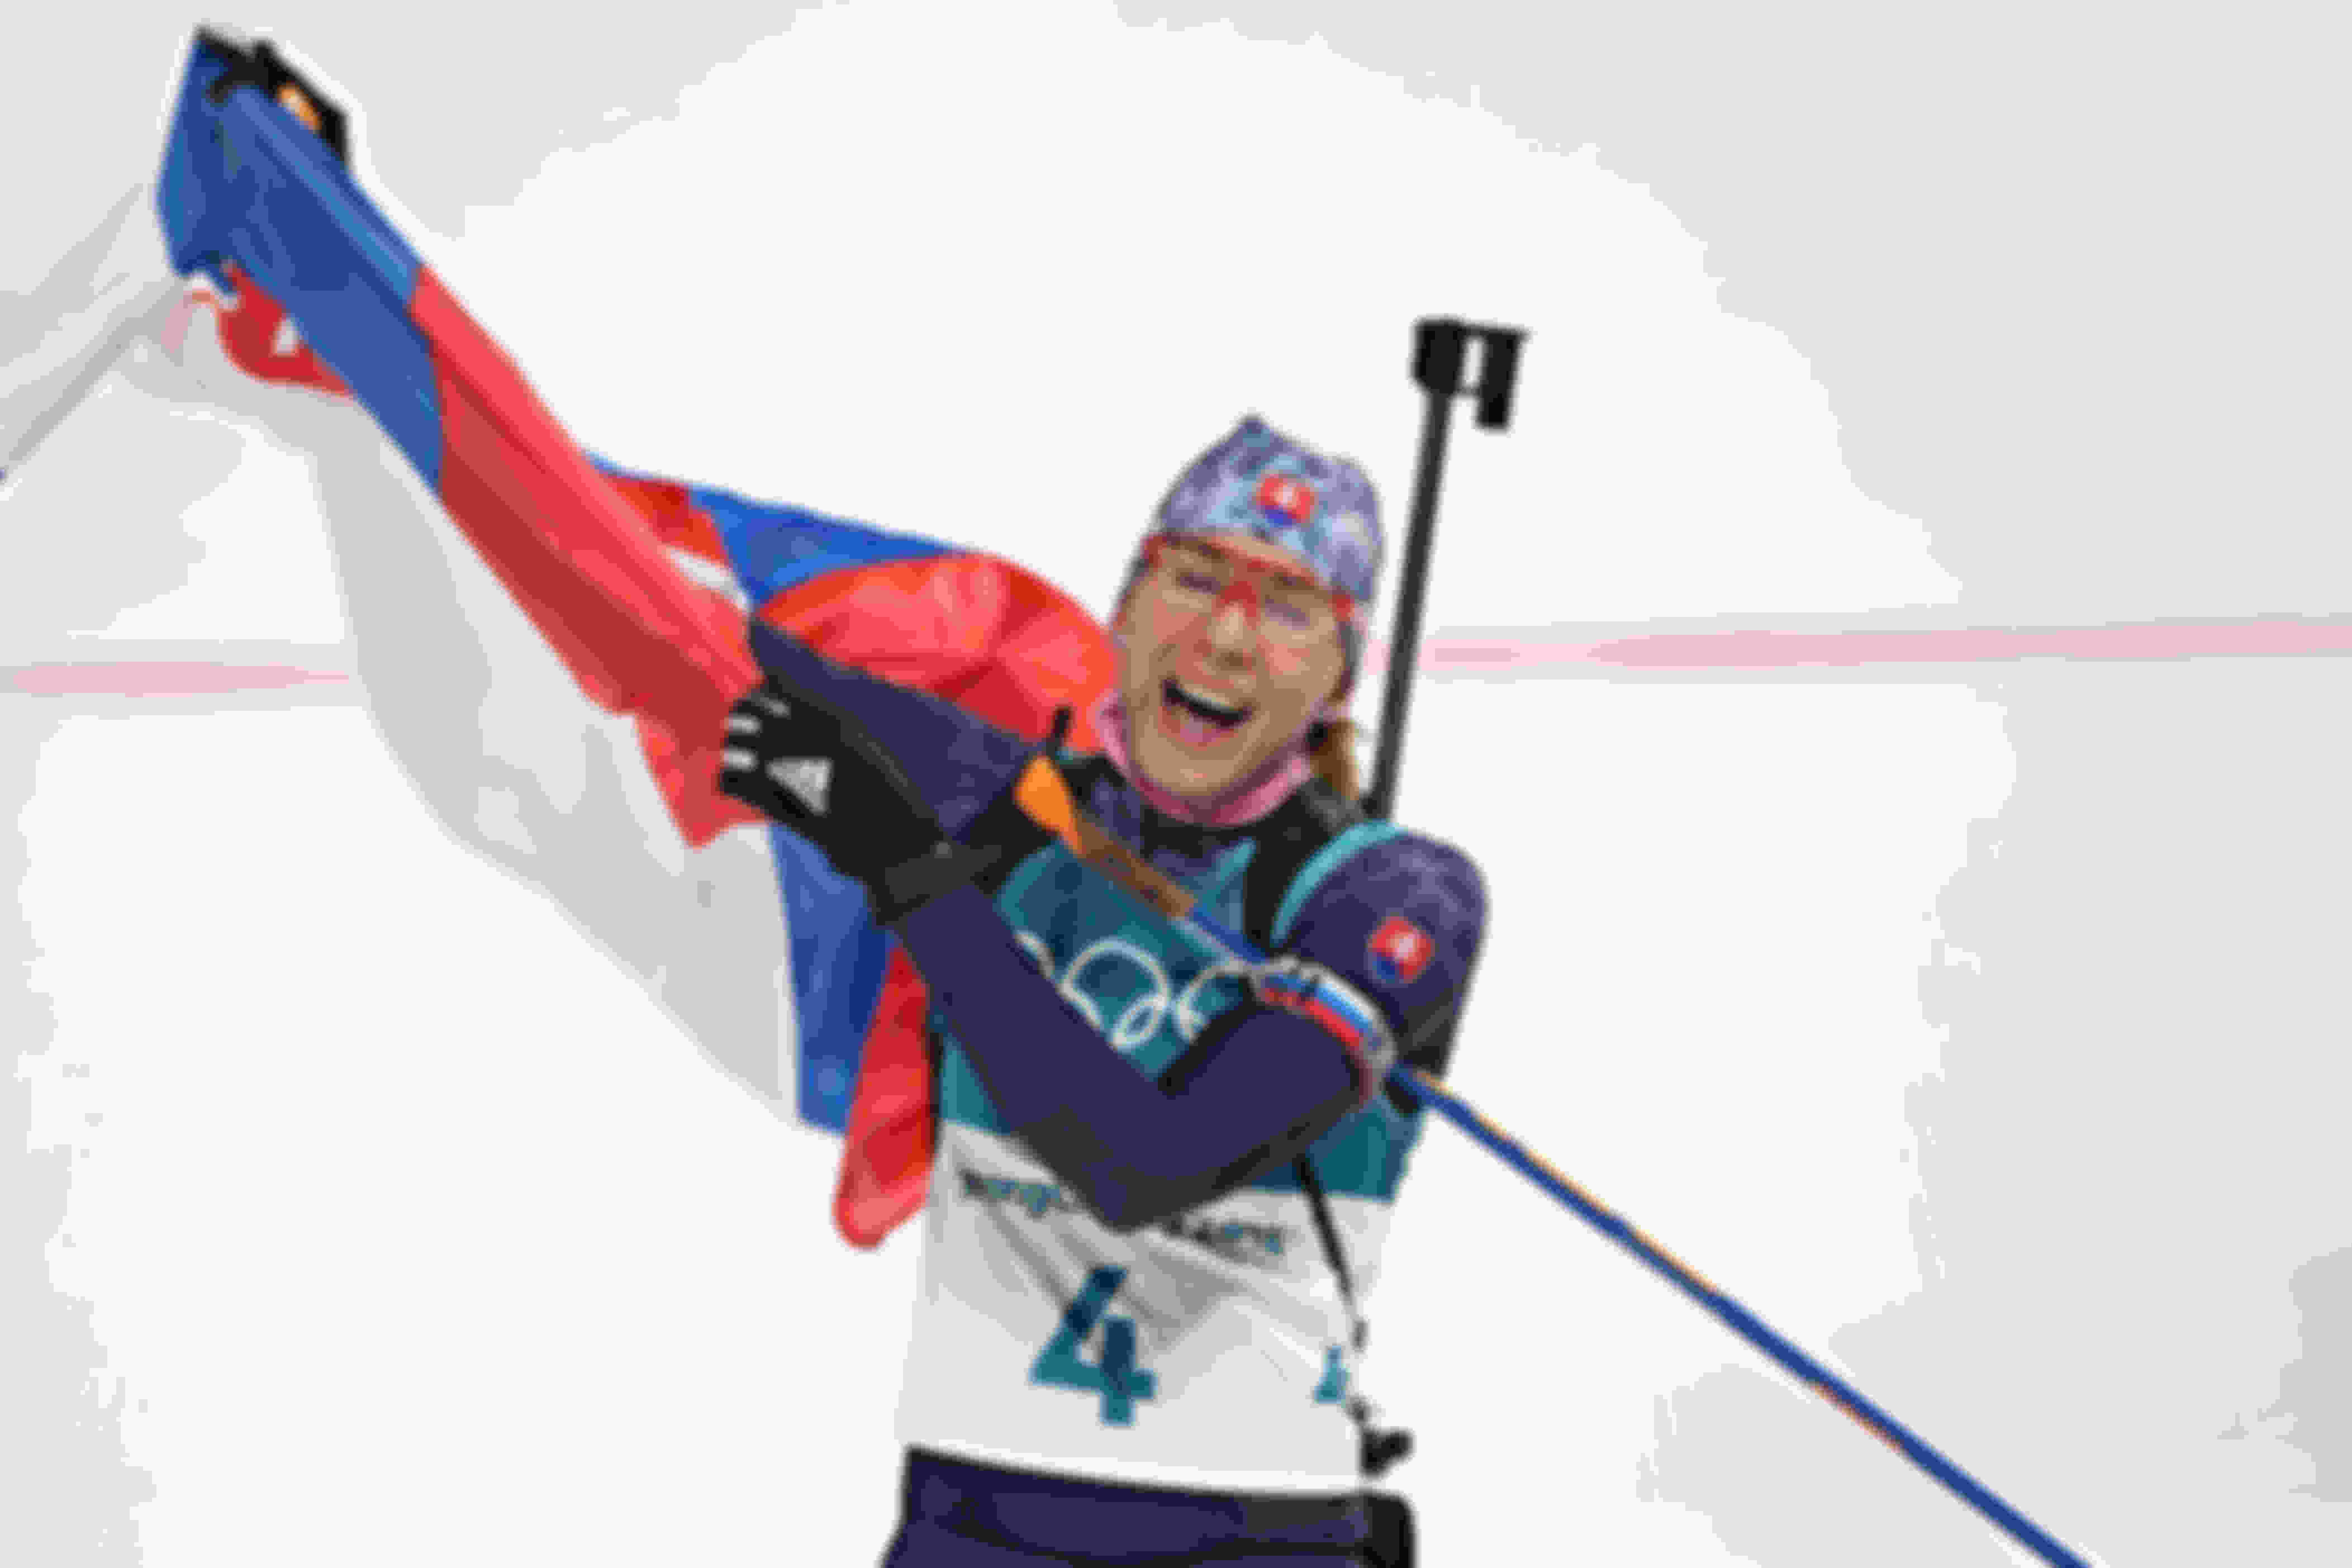 Terceira medalha de ouro para Kuzmina em PyeongChang: pura alegria e felicidade